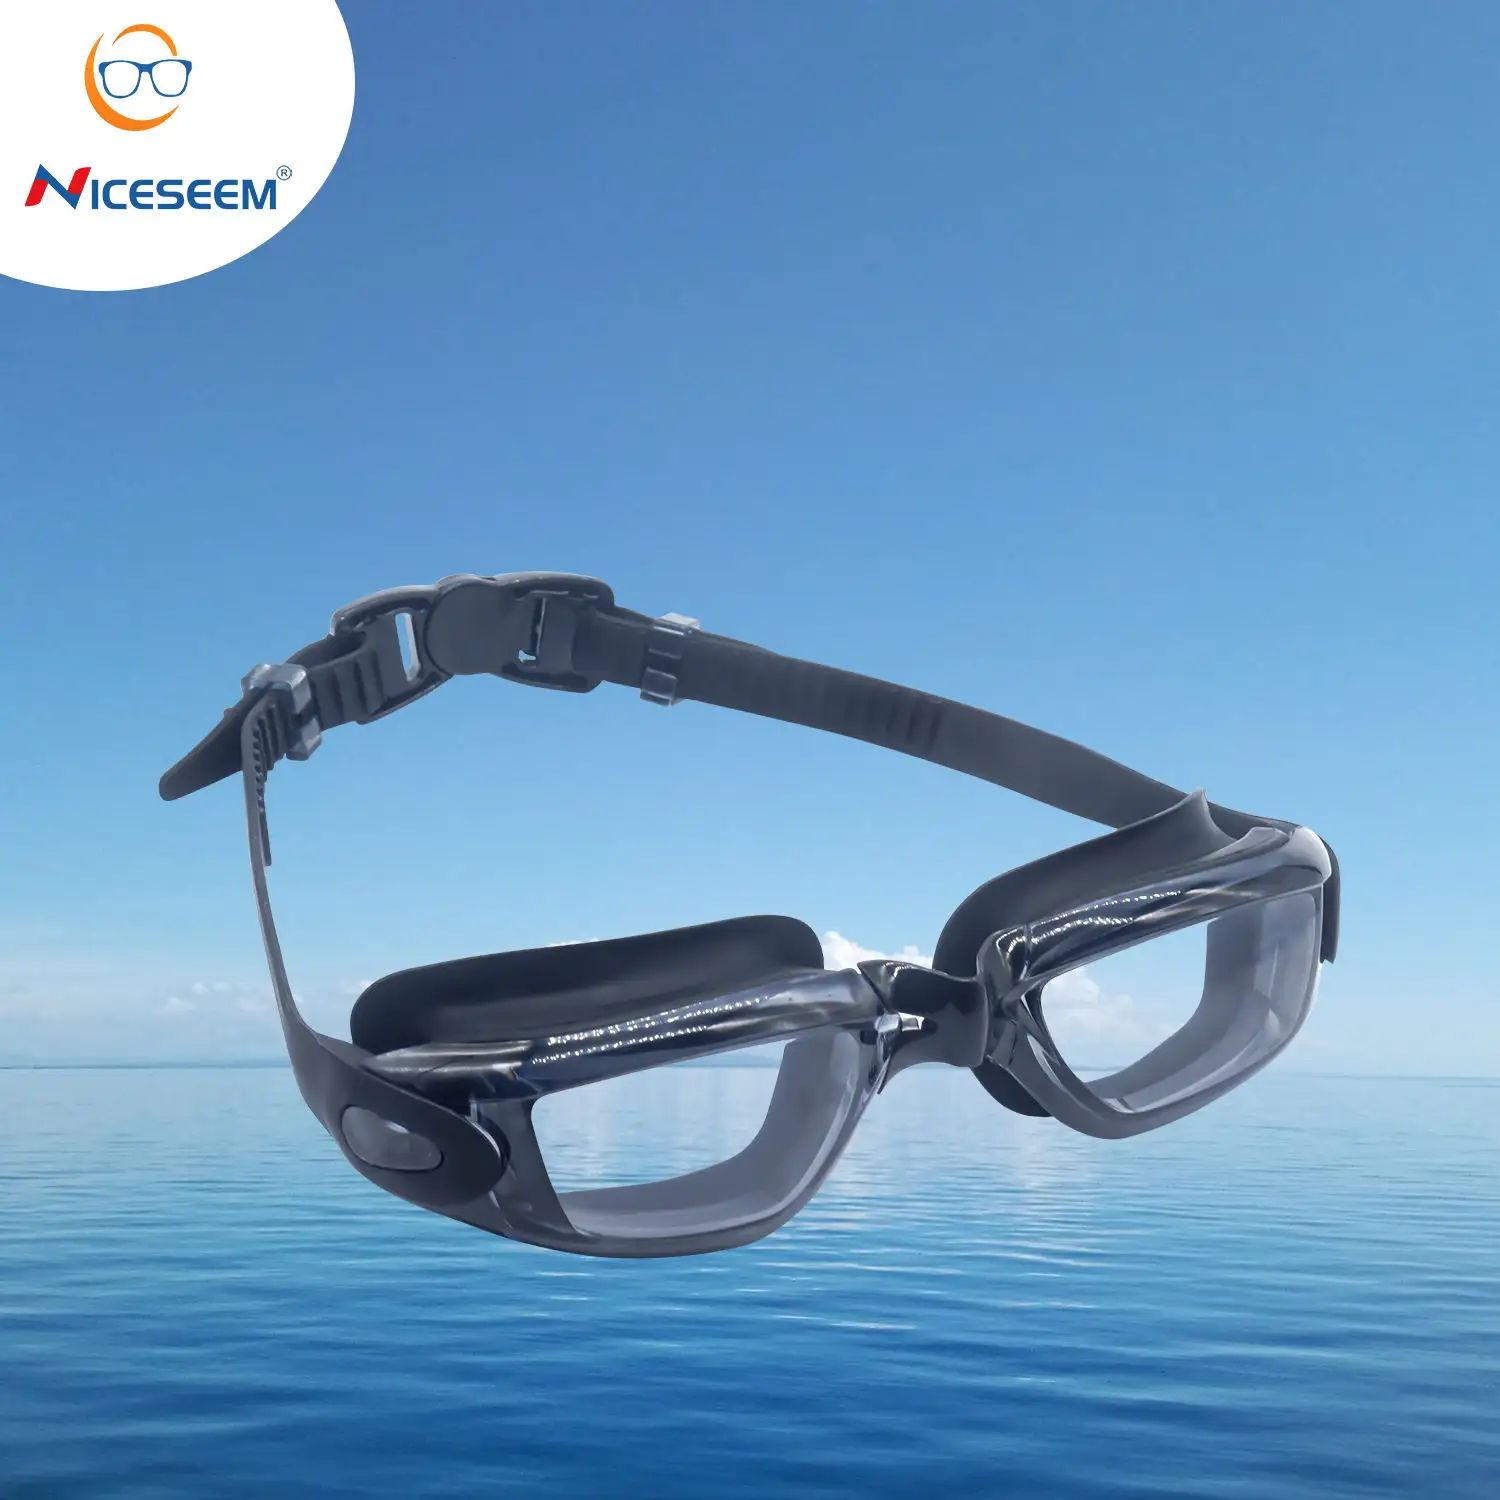 새로운 별 안개 방지 수영 안경 맞춤형 실리콘 스트랩 거울 코팅 고급 경쟁 전문 레이스 수영 고글